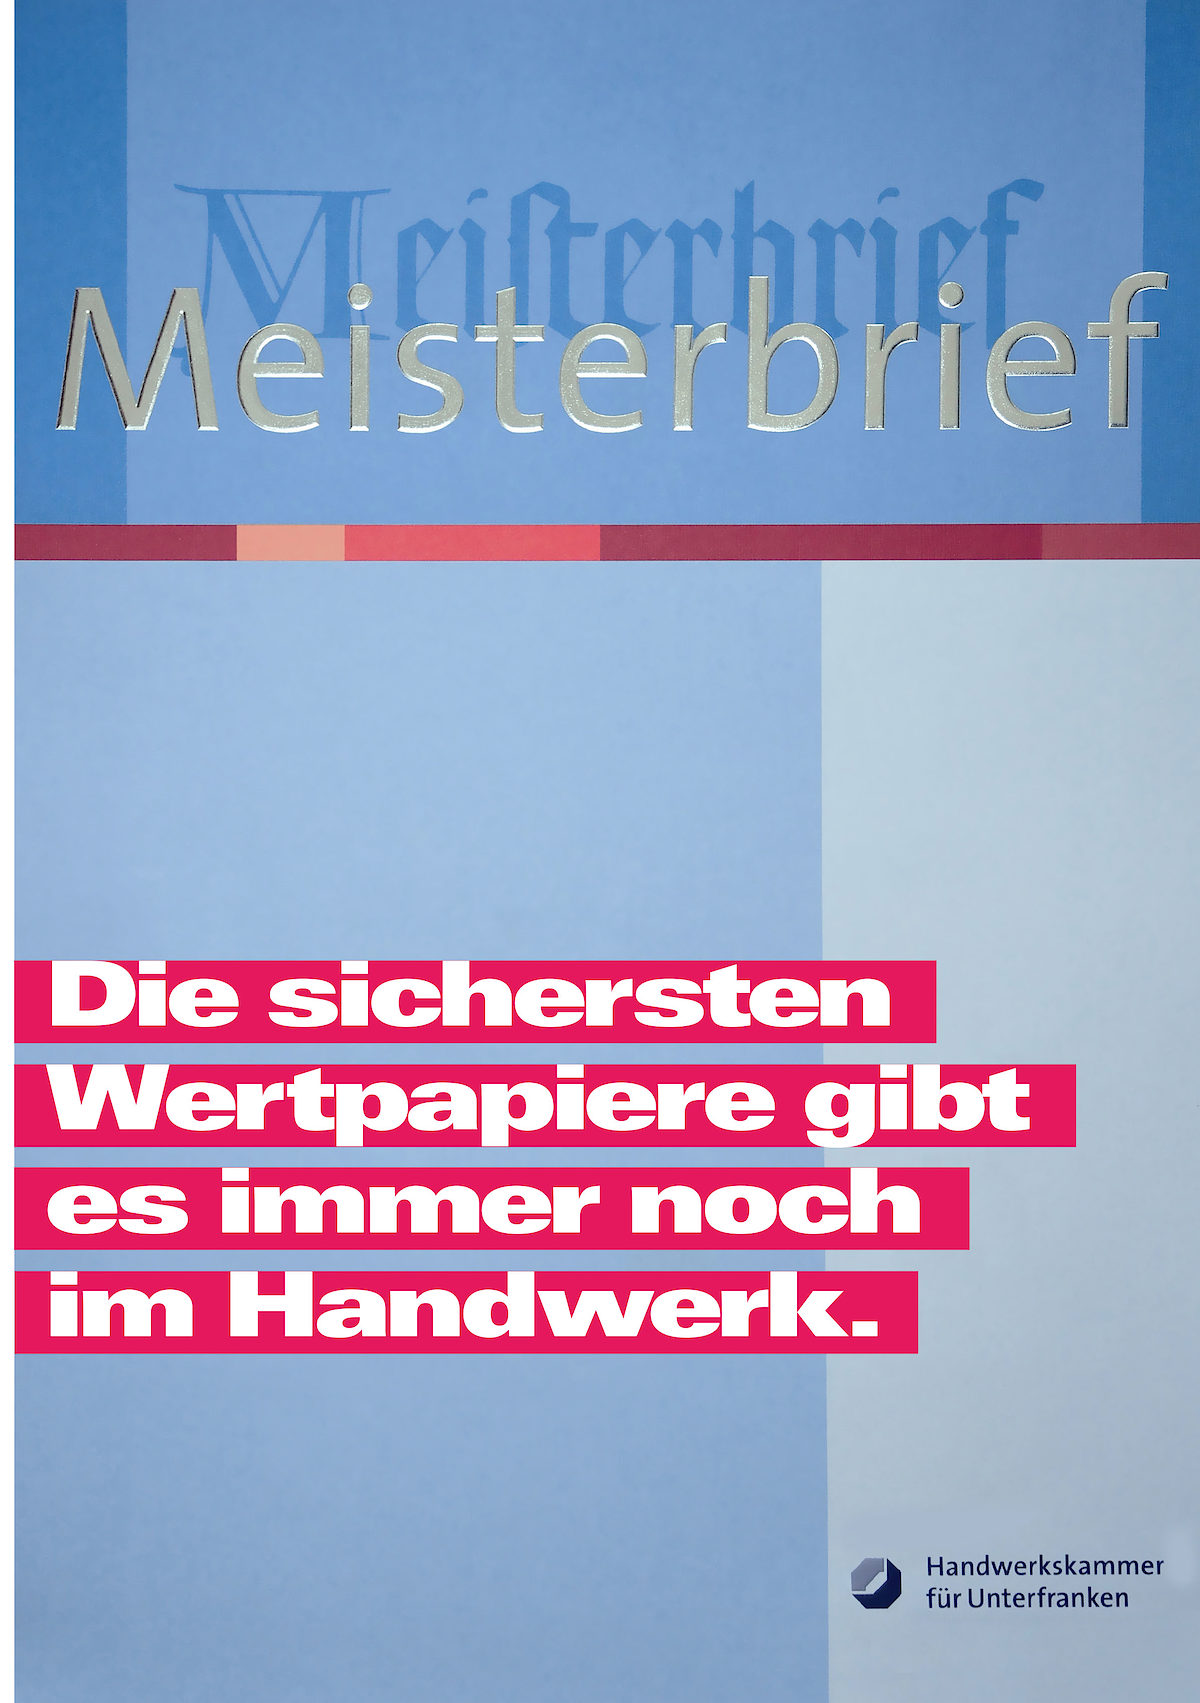 Meisterbrief_Wertpapiere_IK